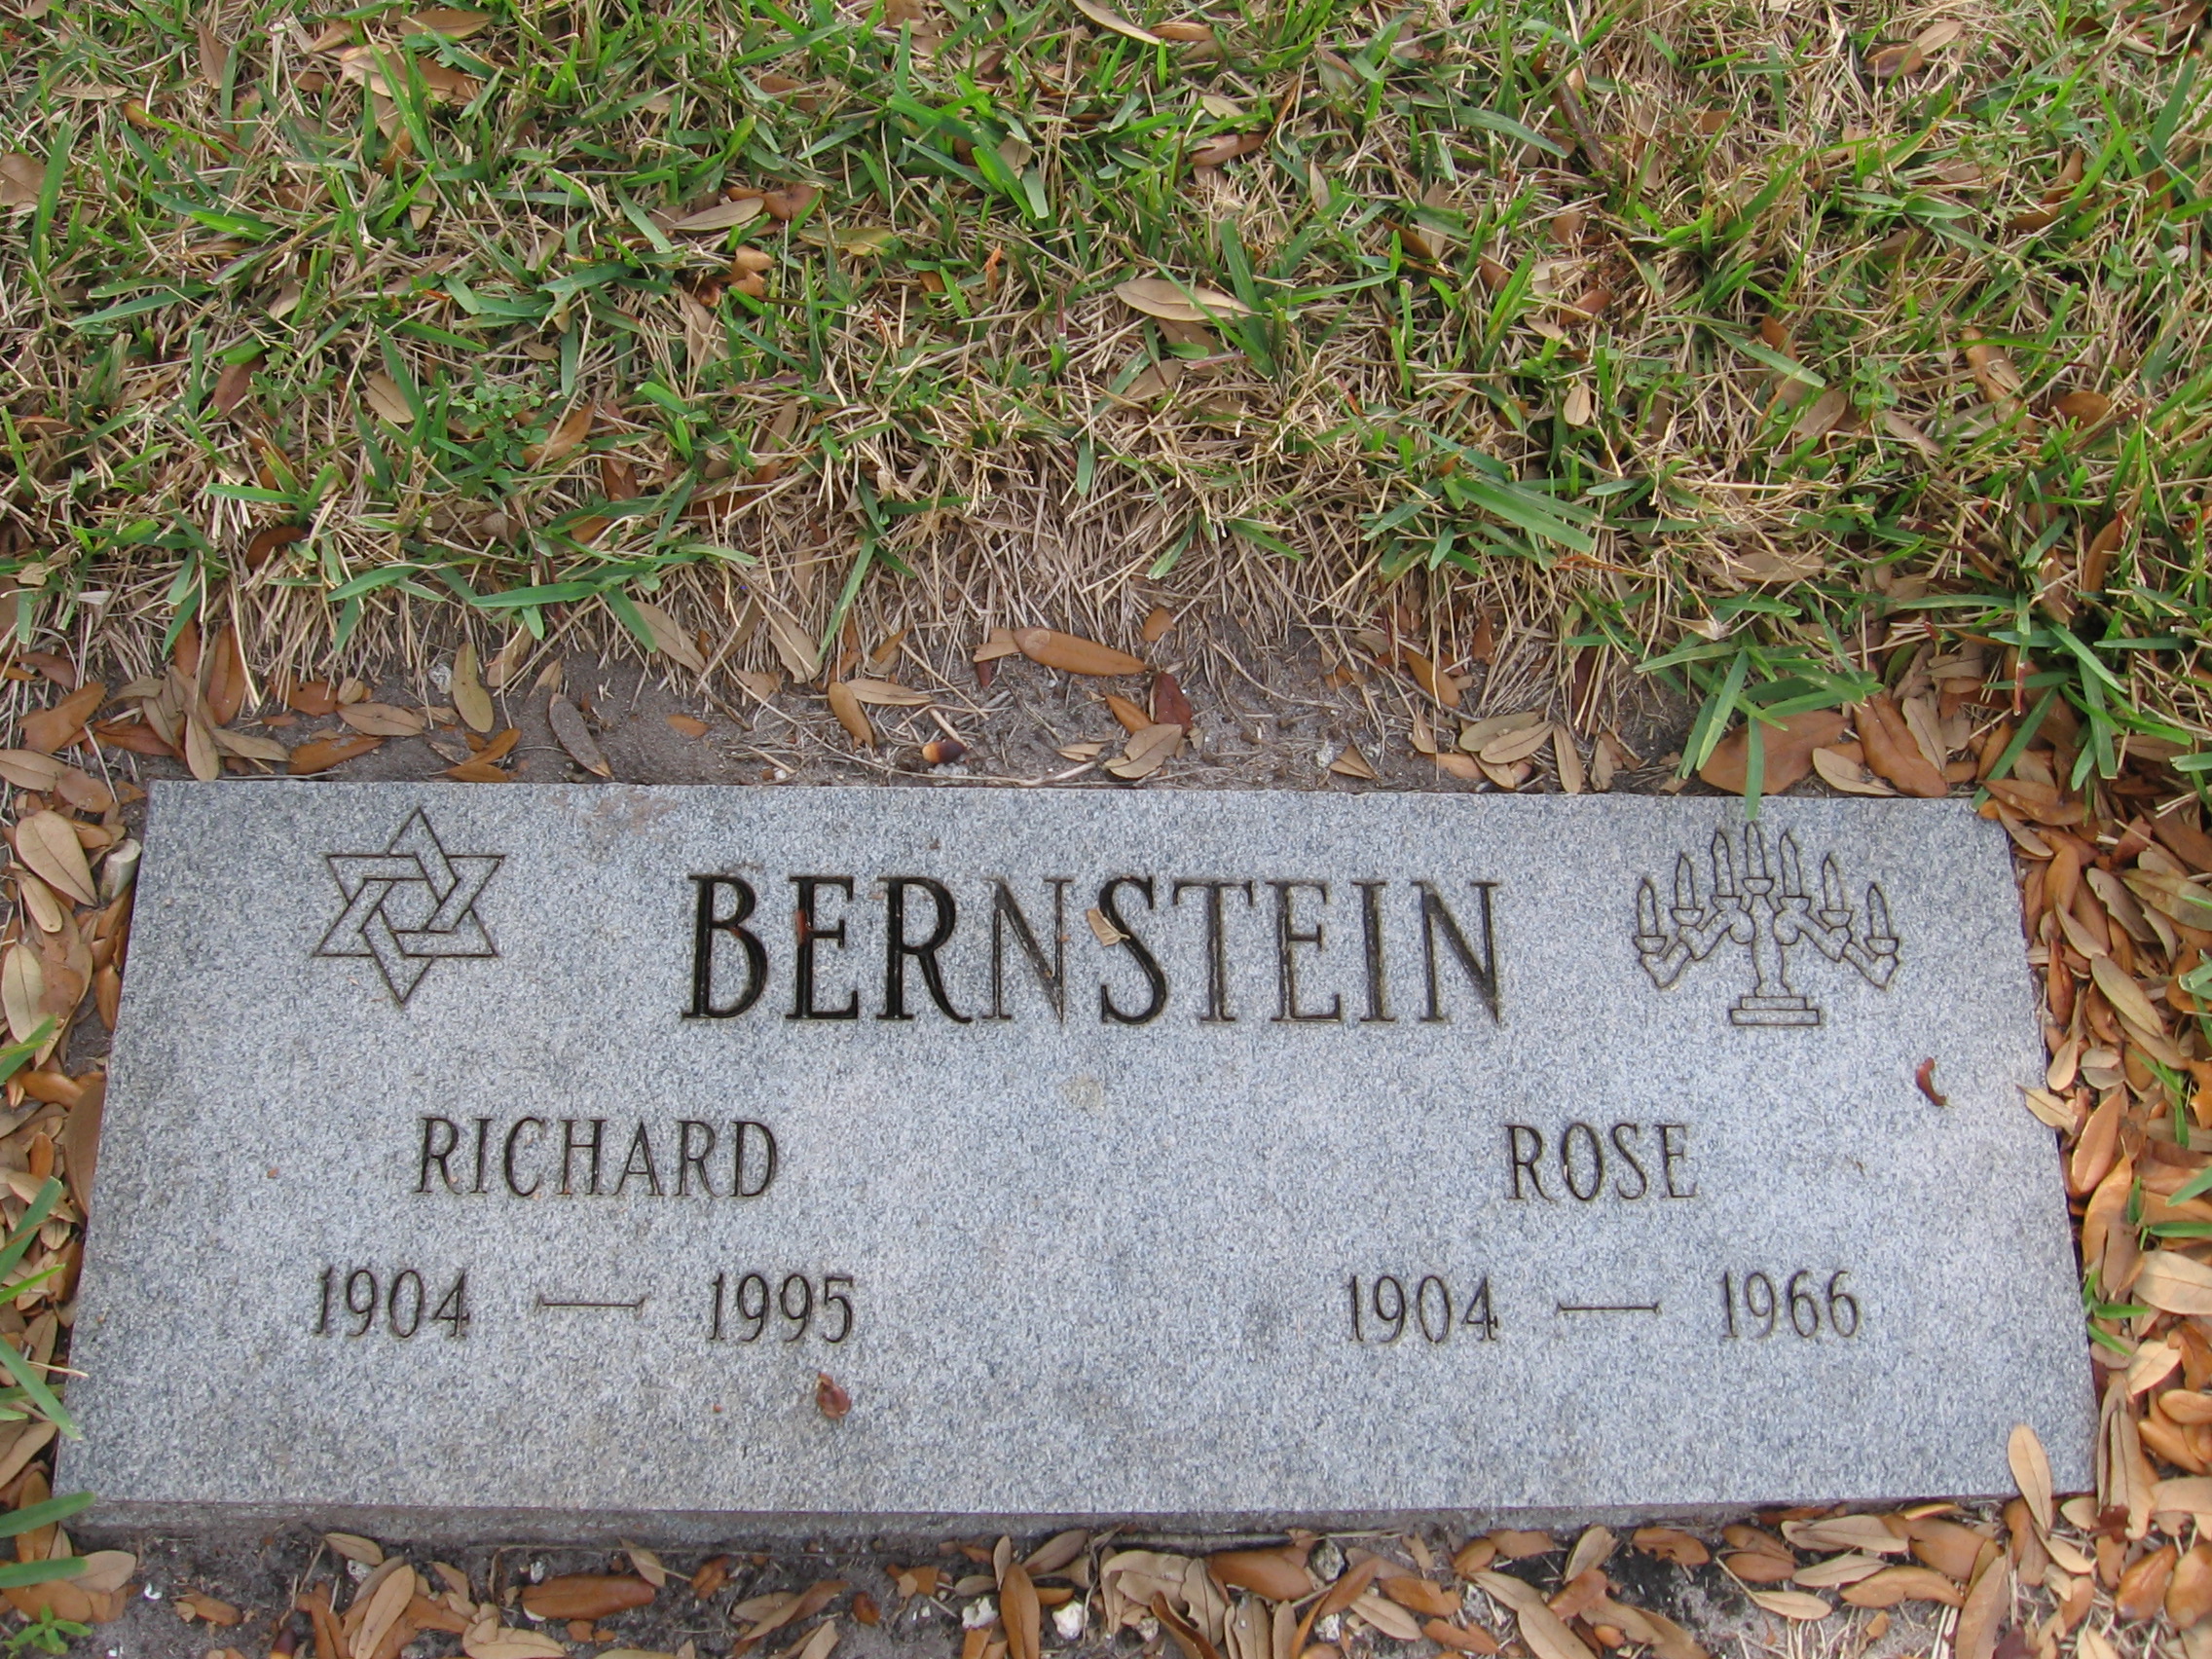 Richard Bernstein